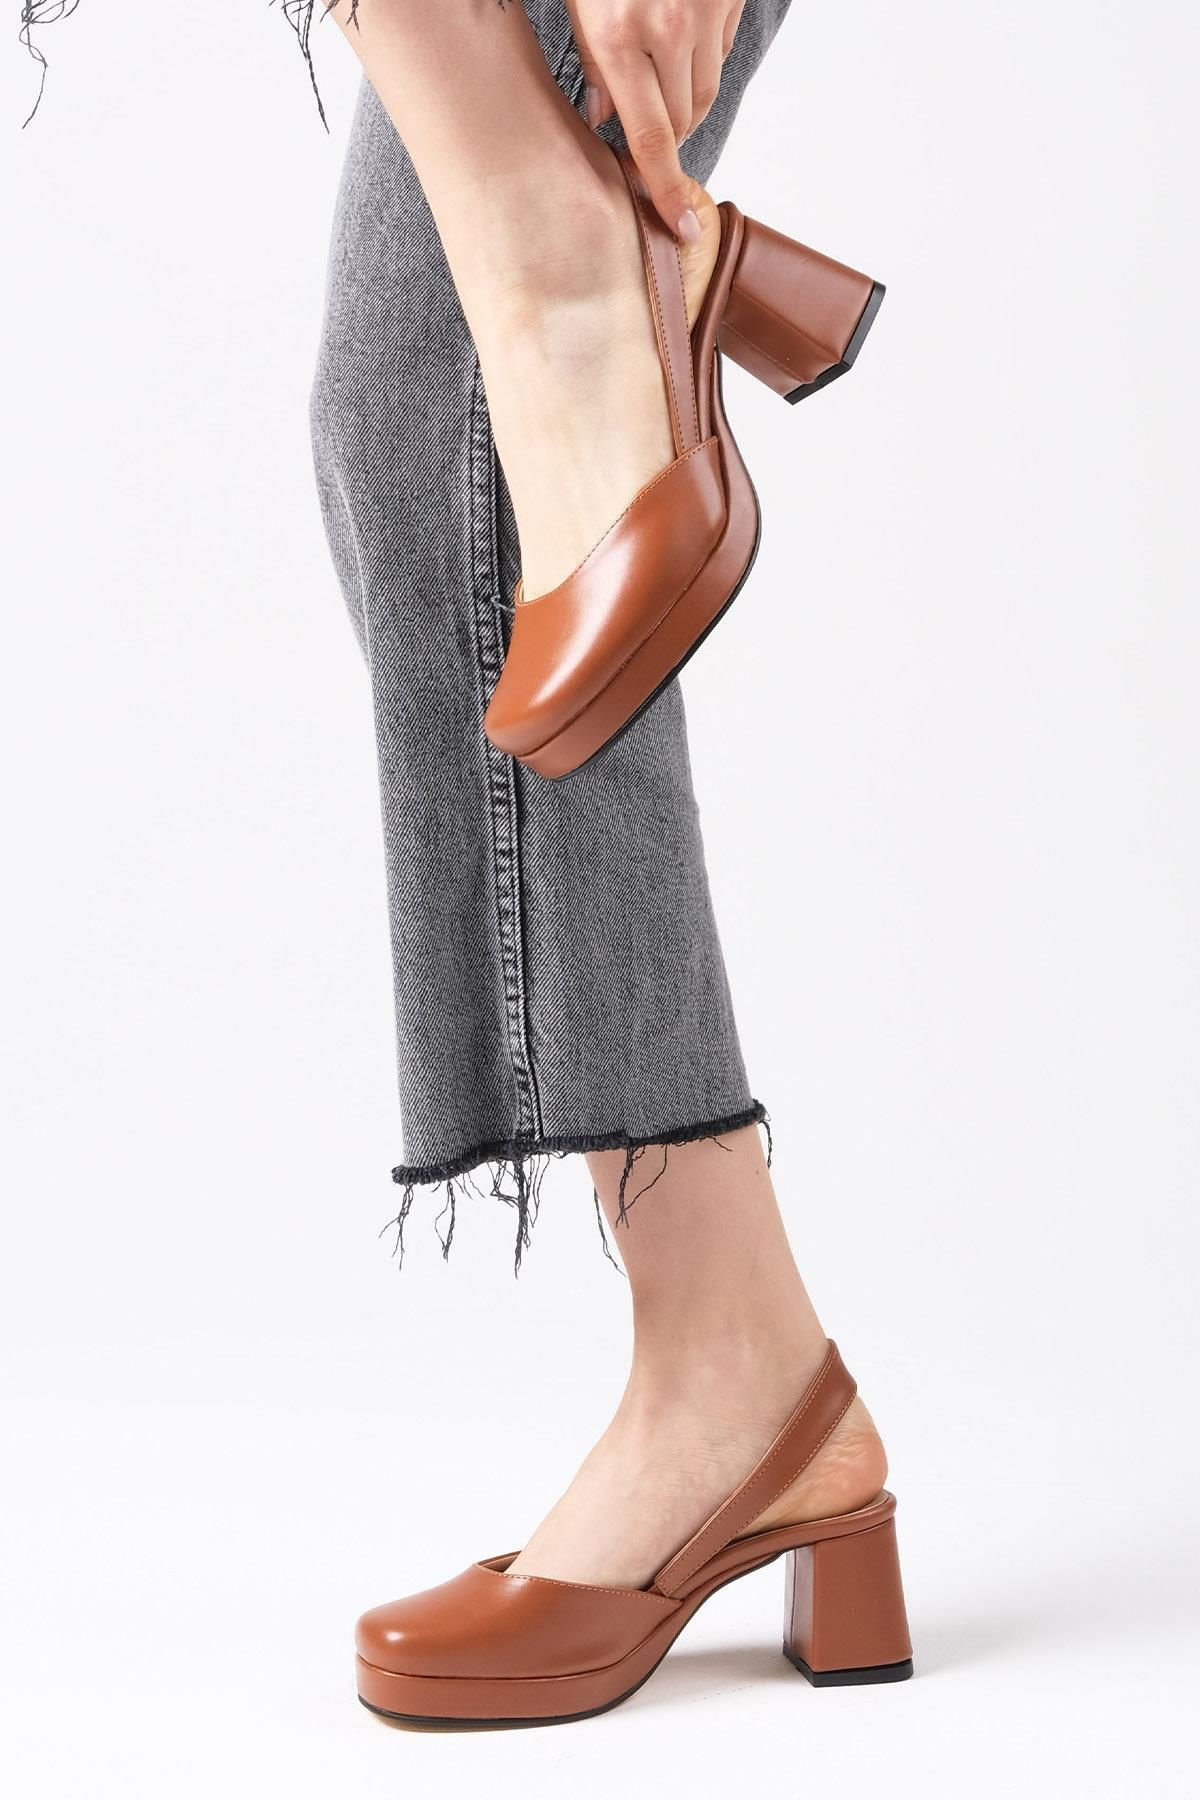 Mio Gusto Evita Taba Renk Arkası Açık Platformlu Kadın Topuklu Ayakkabı